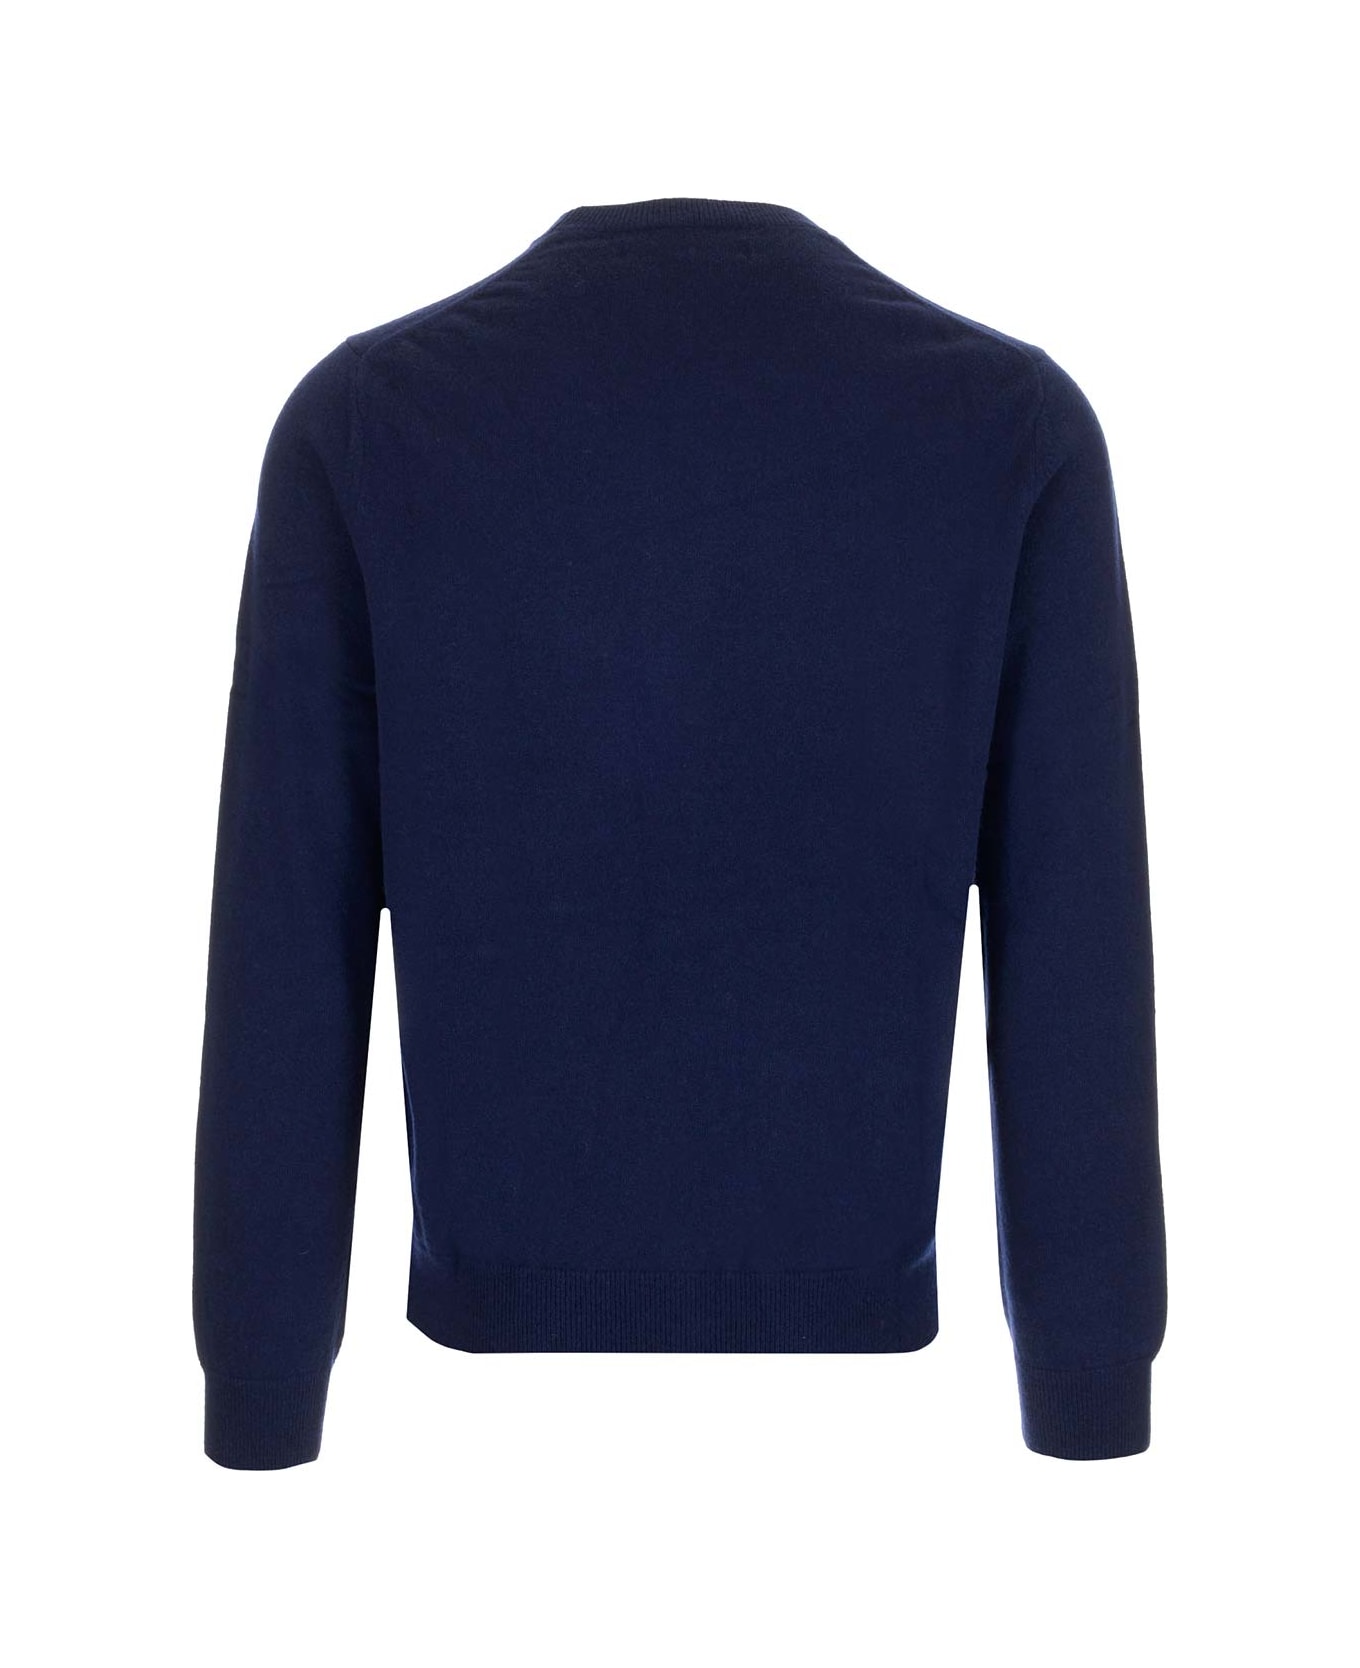 Comme des Garçons Shirt Blue Crewneck Sweater - NAVY ニットウェア